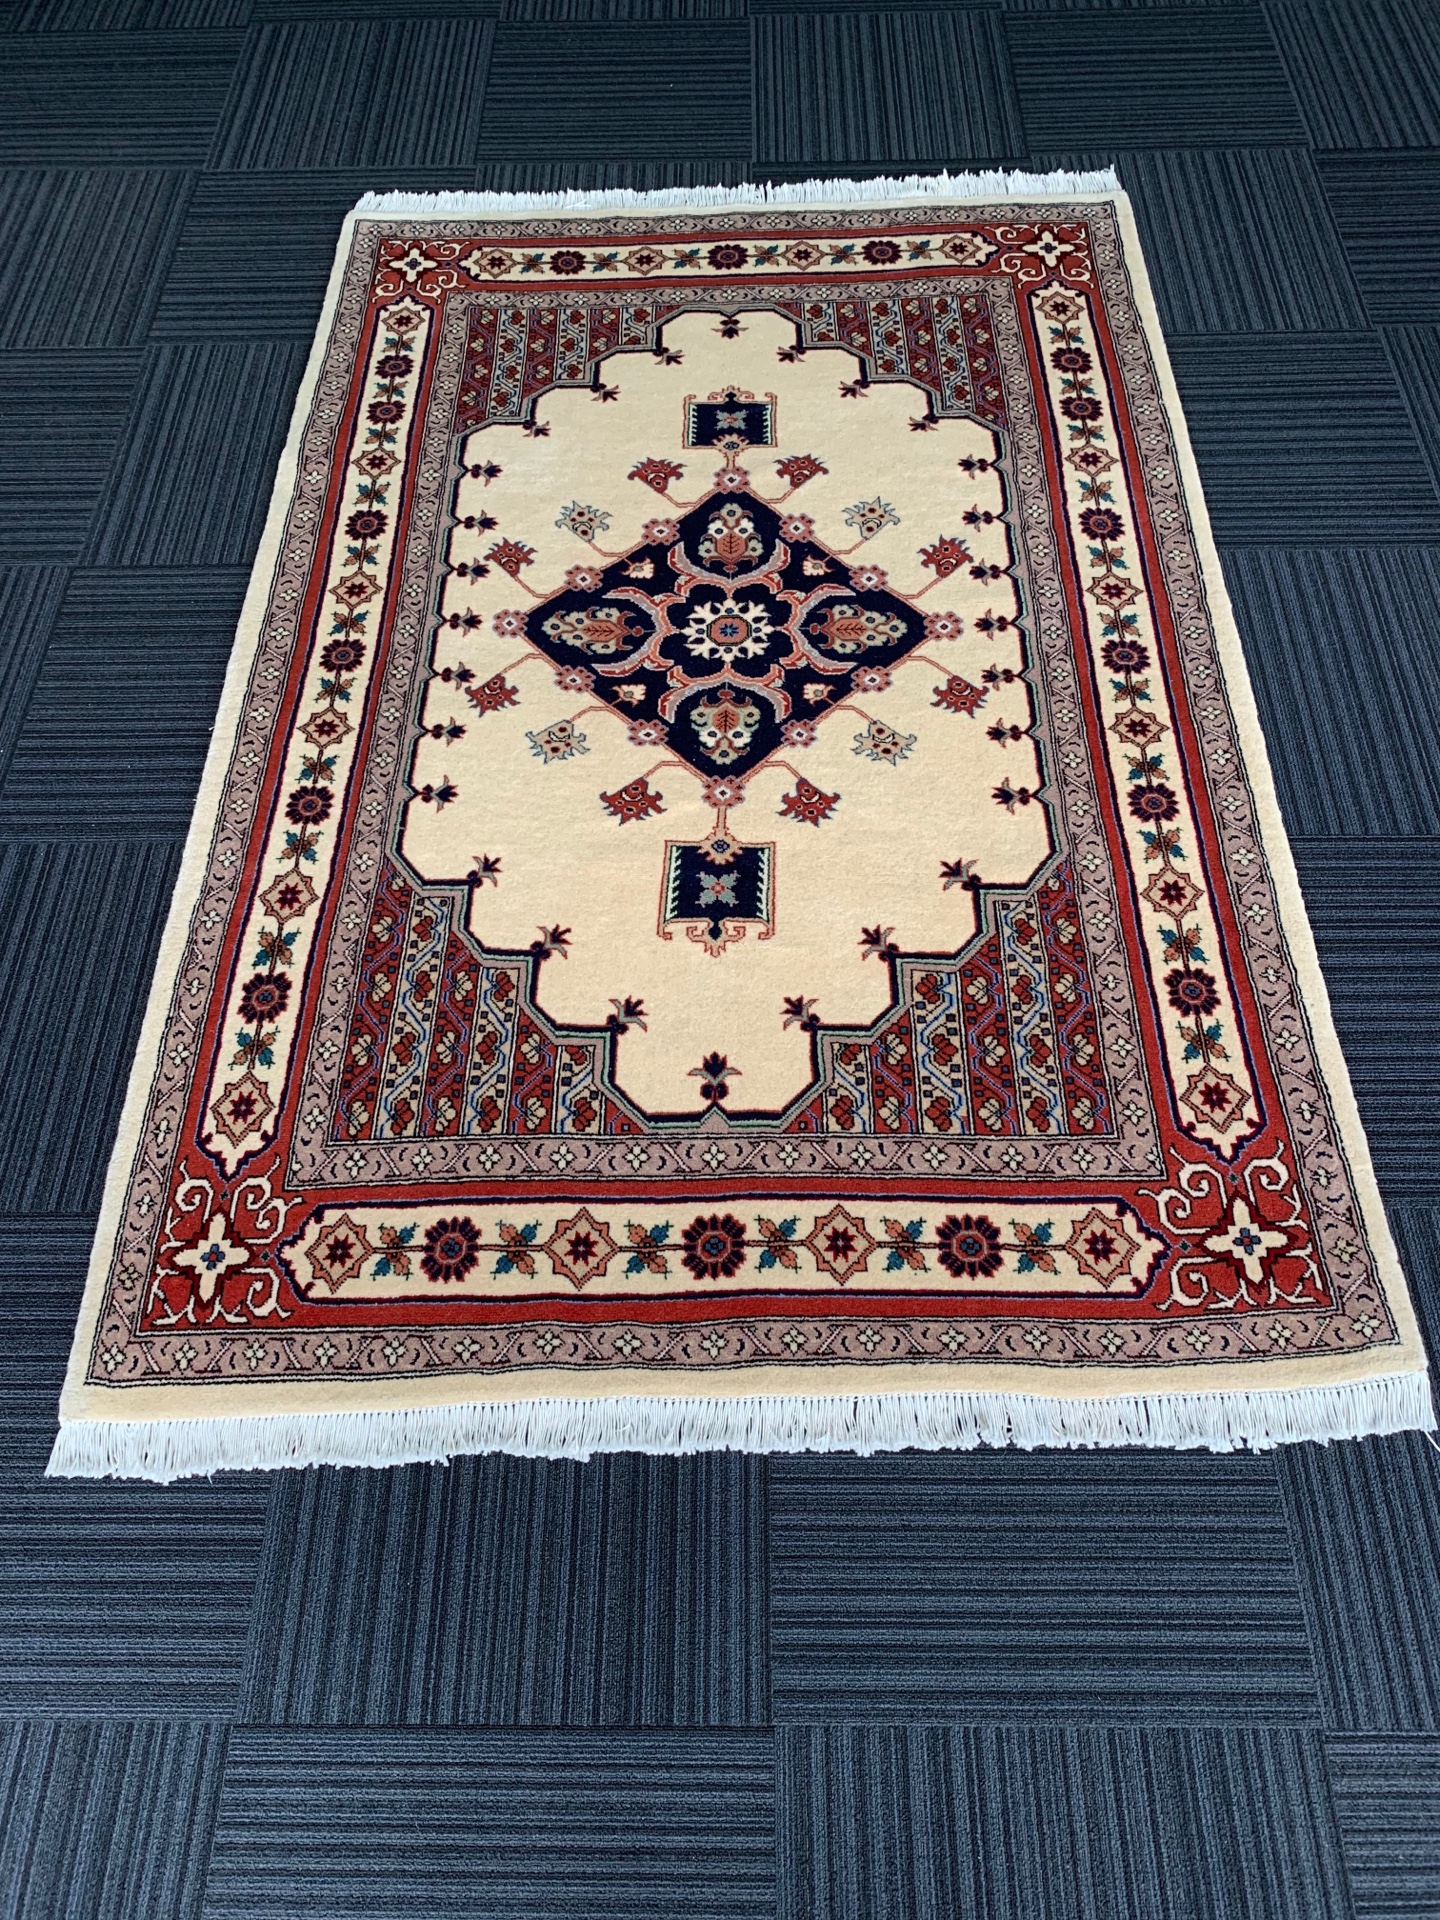 パキスタン絨毯 | じゅうたん売場 ギャンジィー